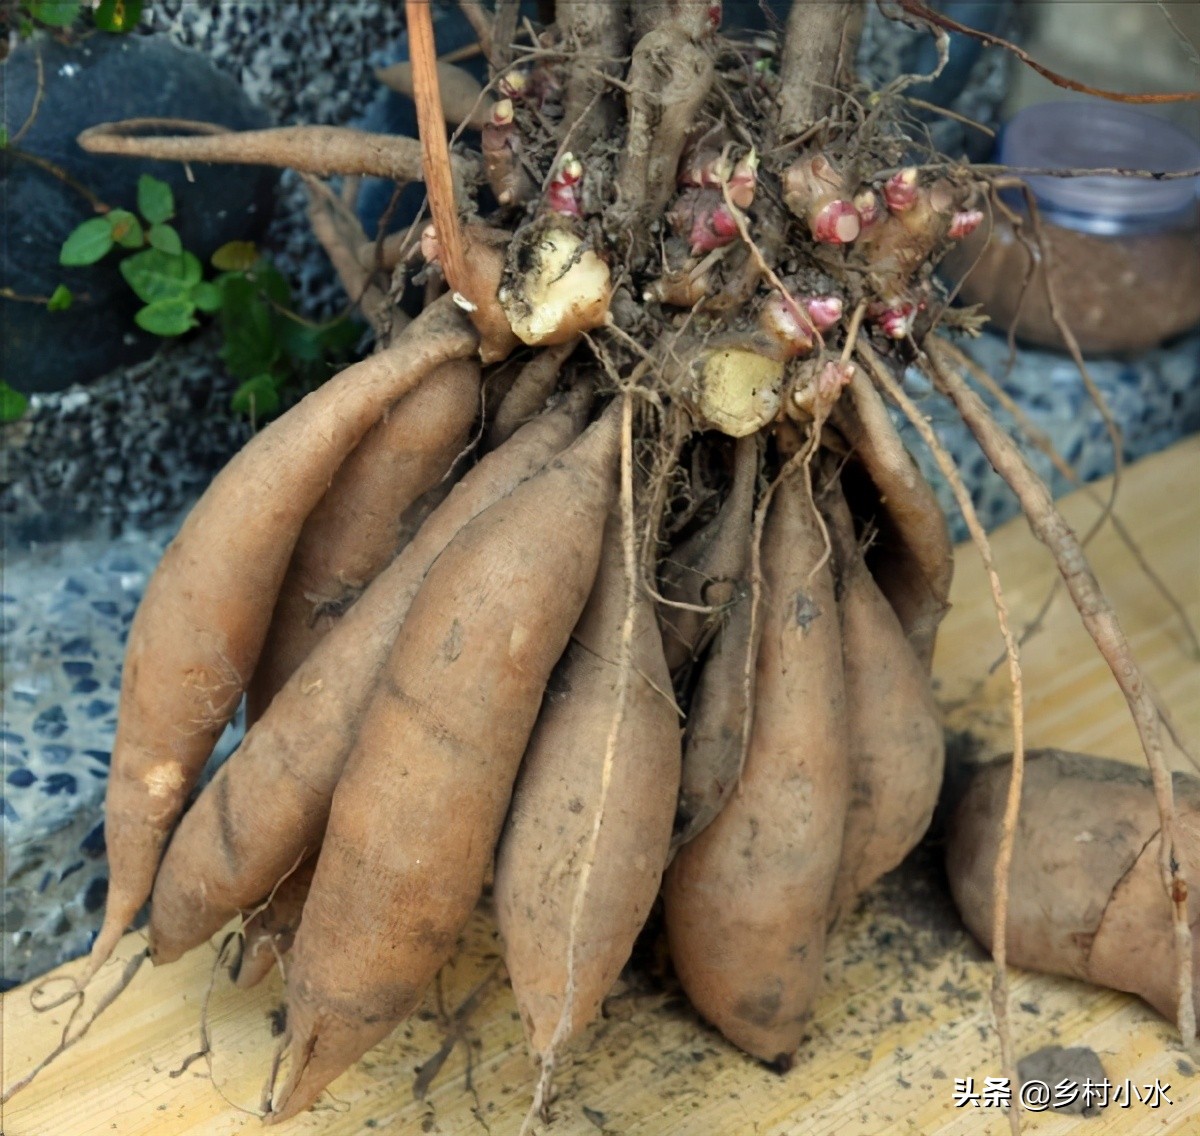 地下水果之王雪莲果，长得似红薯，你知道怎么高产栽培吗？